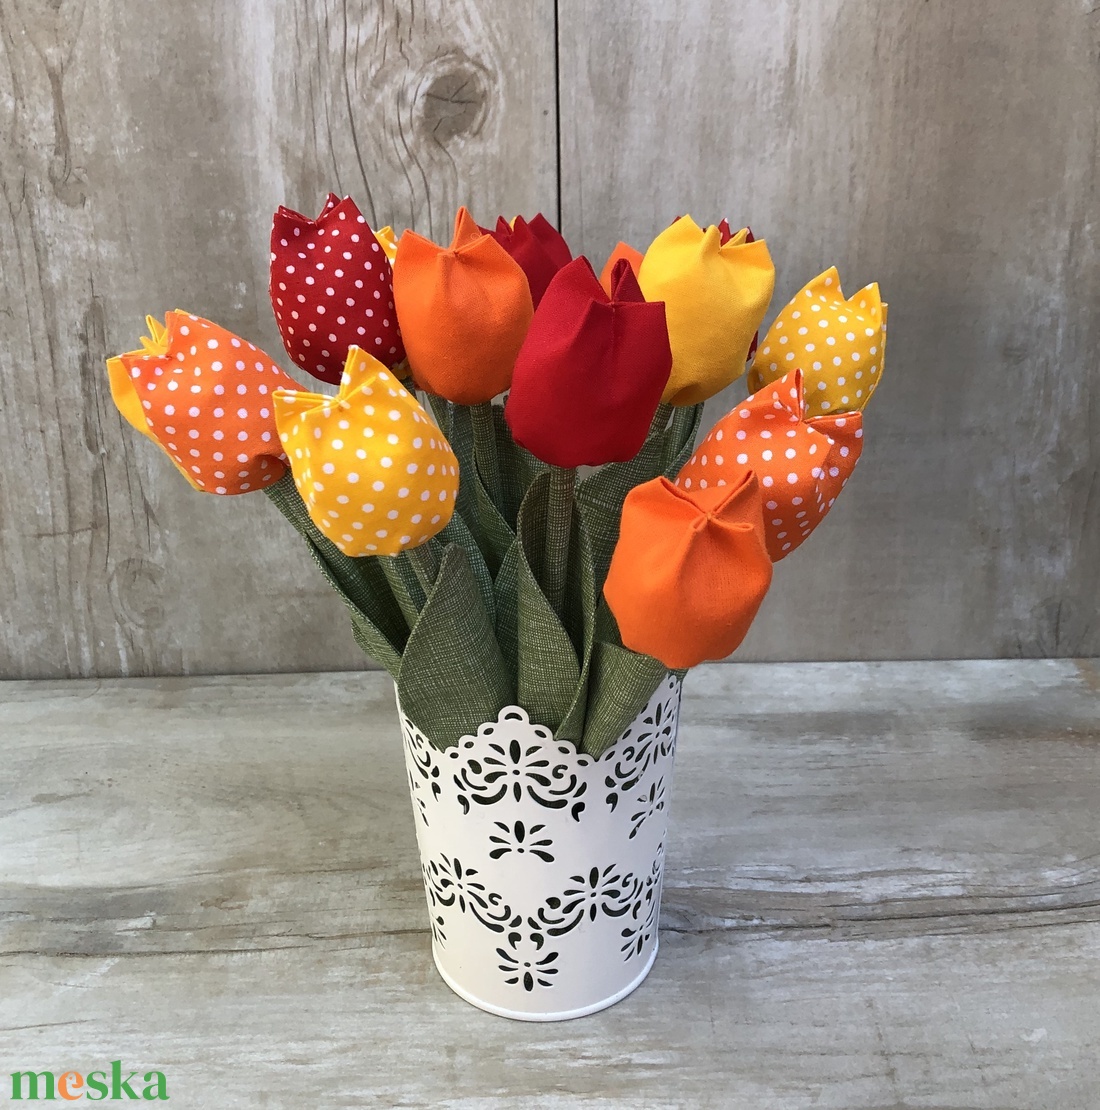 Textil tulipán /szett: 12 db/ ingyen ajándékkísérővel - otthon & lakás - dekoráció - Meska.hu